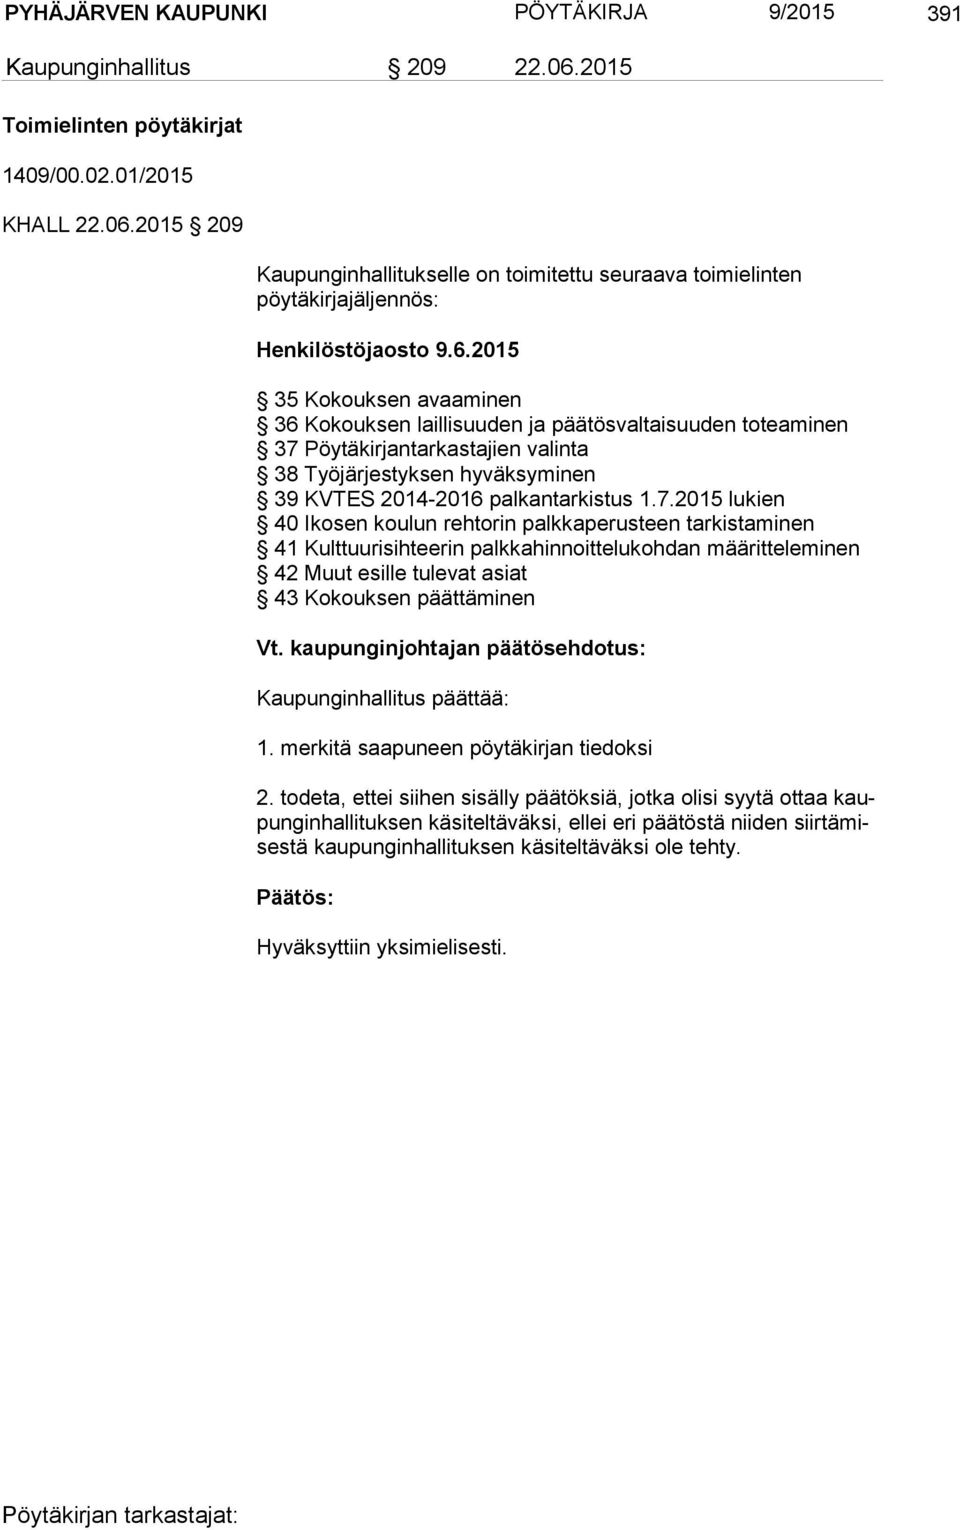 Pöytäkirjantarkastajien valinta 38 Työjärjestyksen hyväksyminen 39 KVTES 2014-2016 palkantarkistus 1.7.